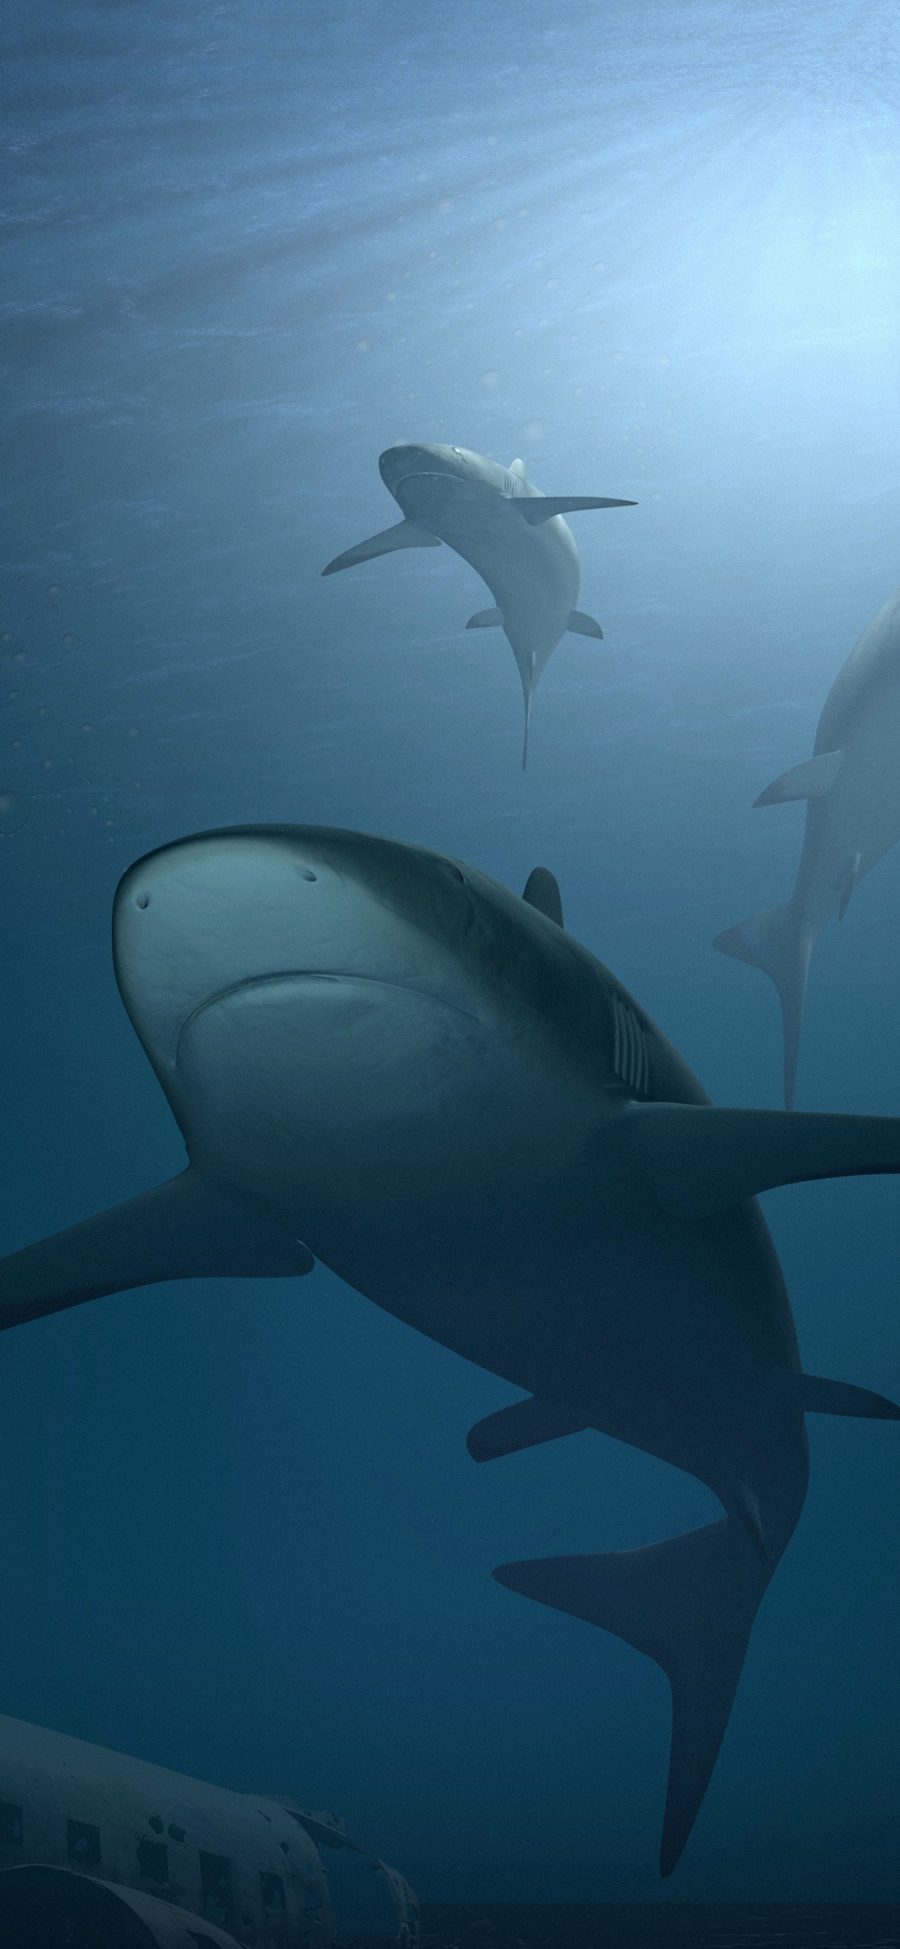 [2436×1125]鲨鱼 海洋生物 海底 猛兽 凶猛 蓝色 深海 苹果手机壁纸图片